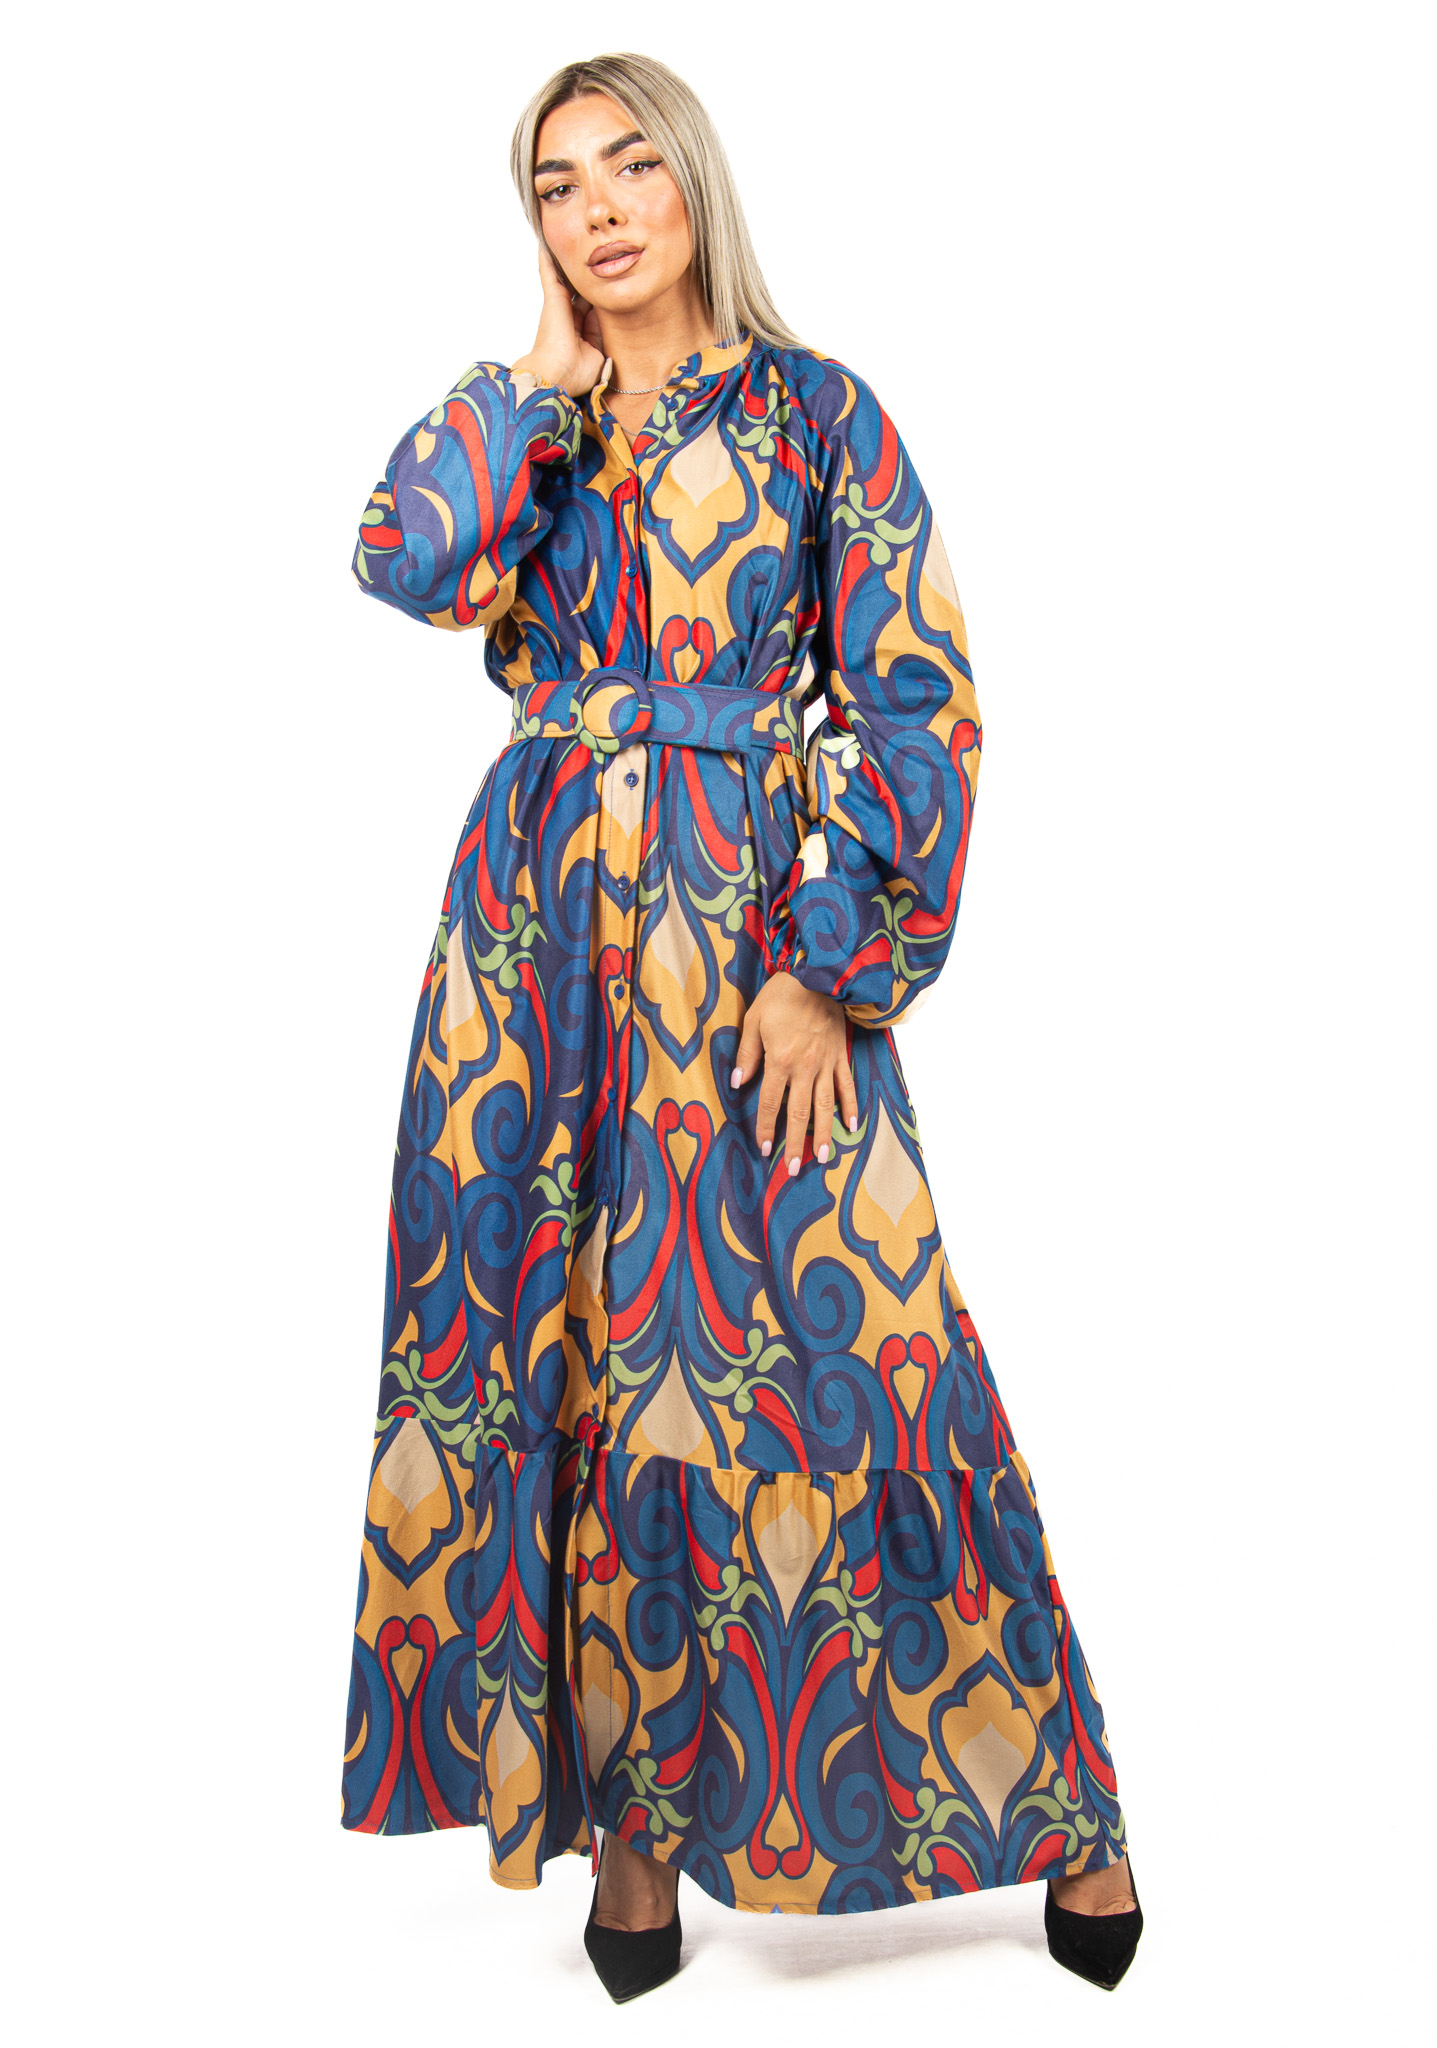 Φόρεμα Σεμιζιέ Σουέτ με Ζώνη Μπλε | EllenBoutique